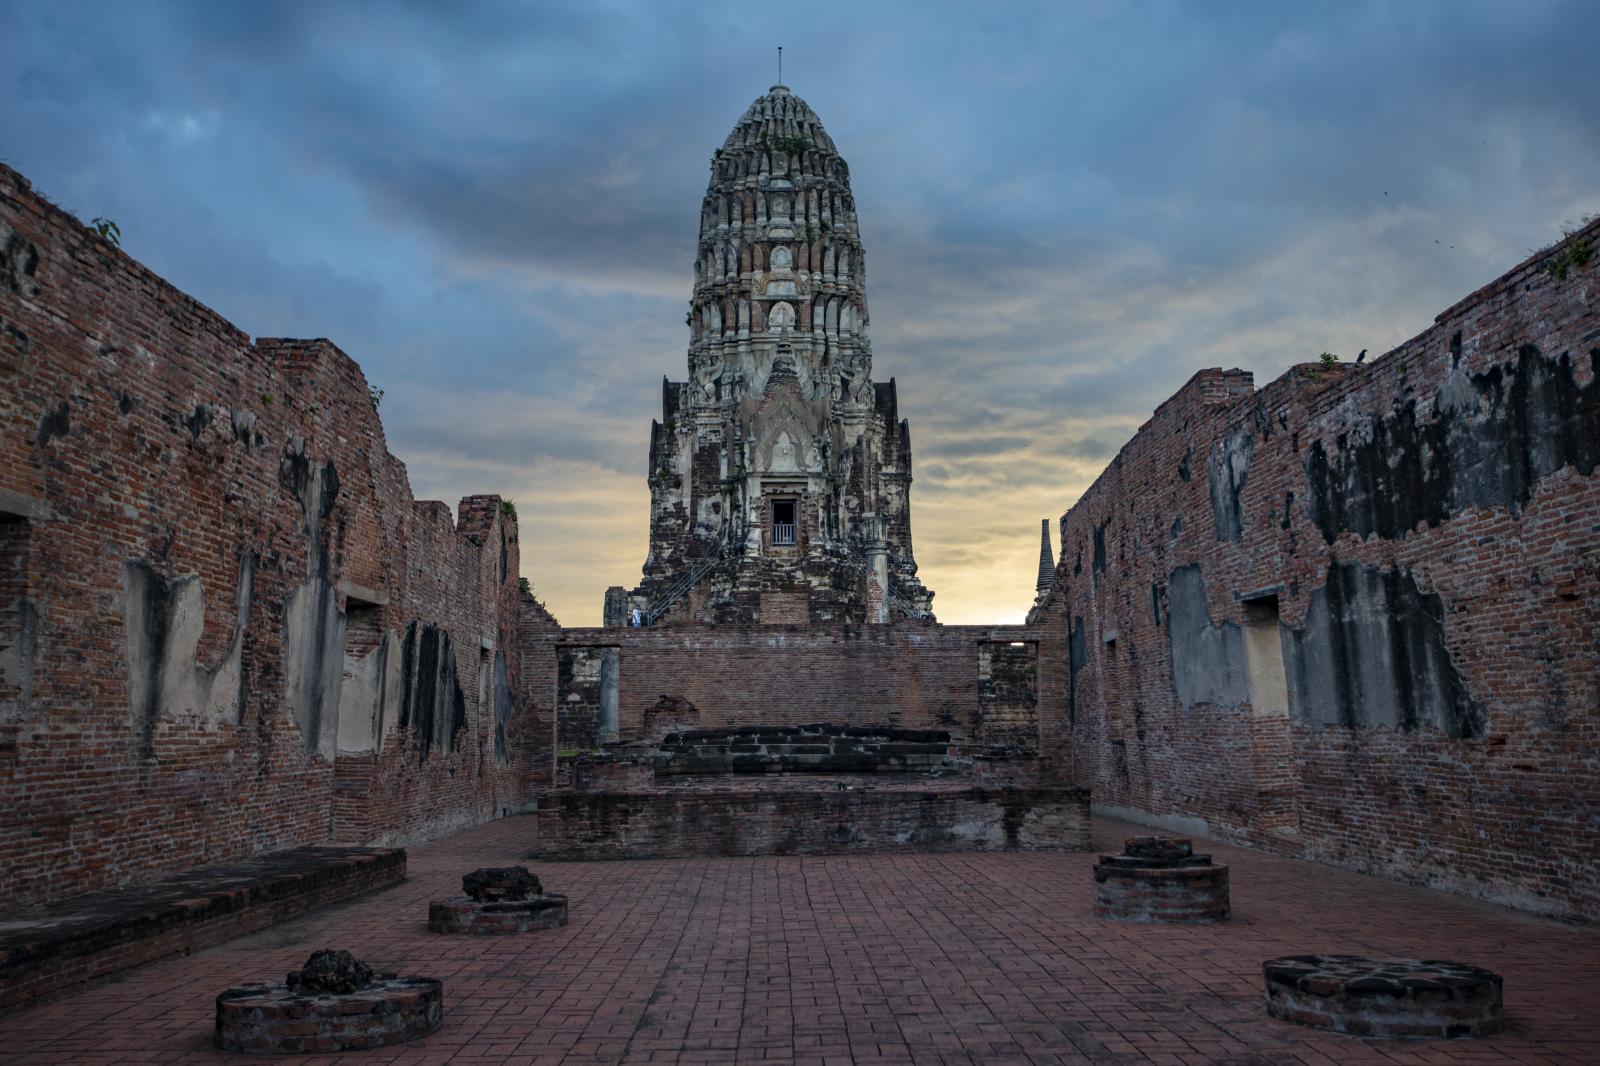 Wat Ratchaburana  | Buy this image